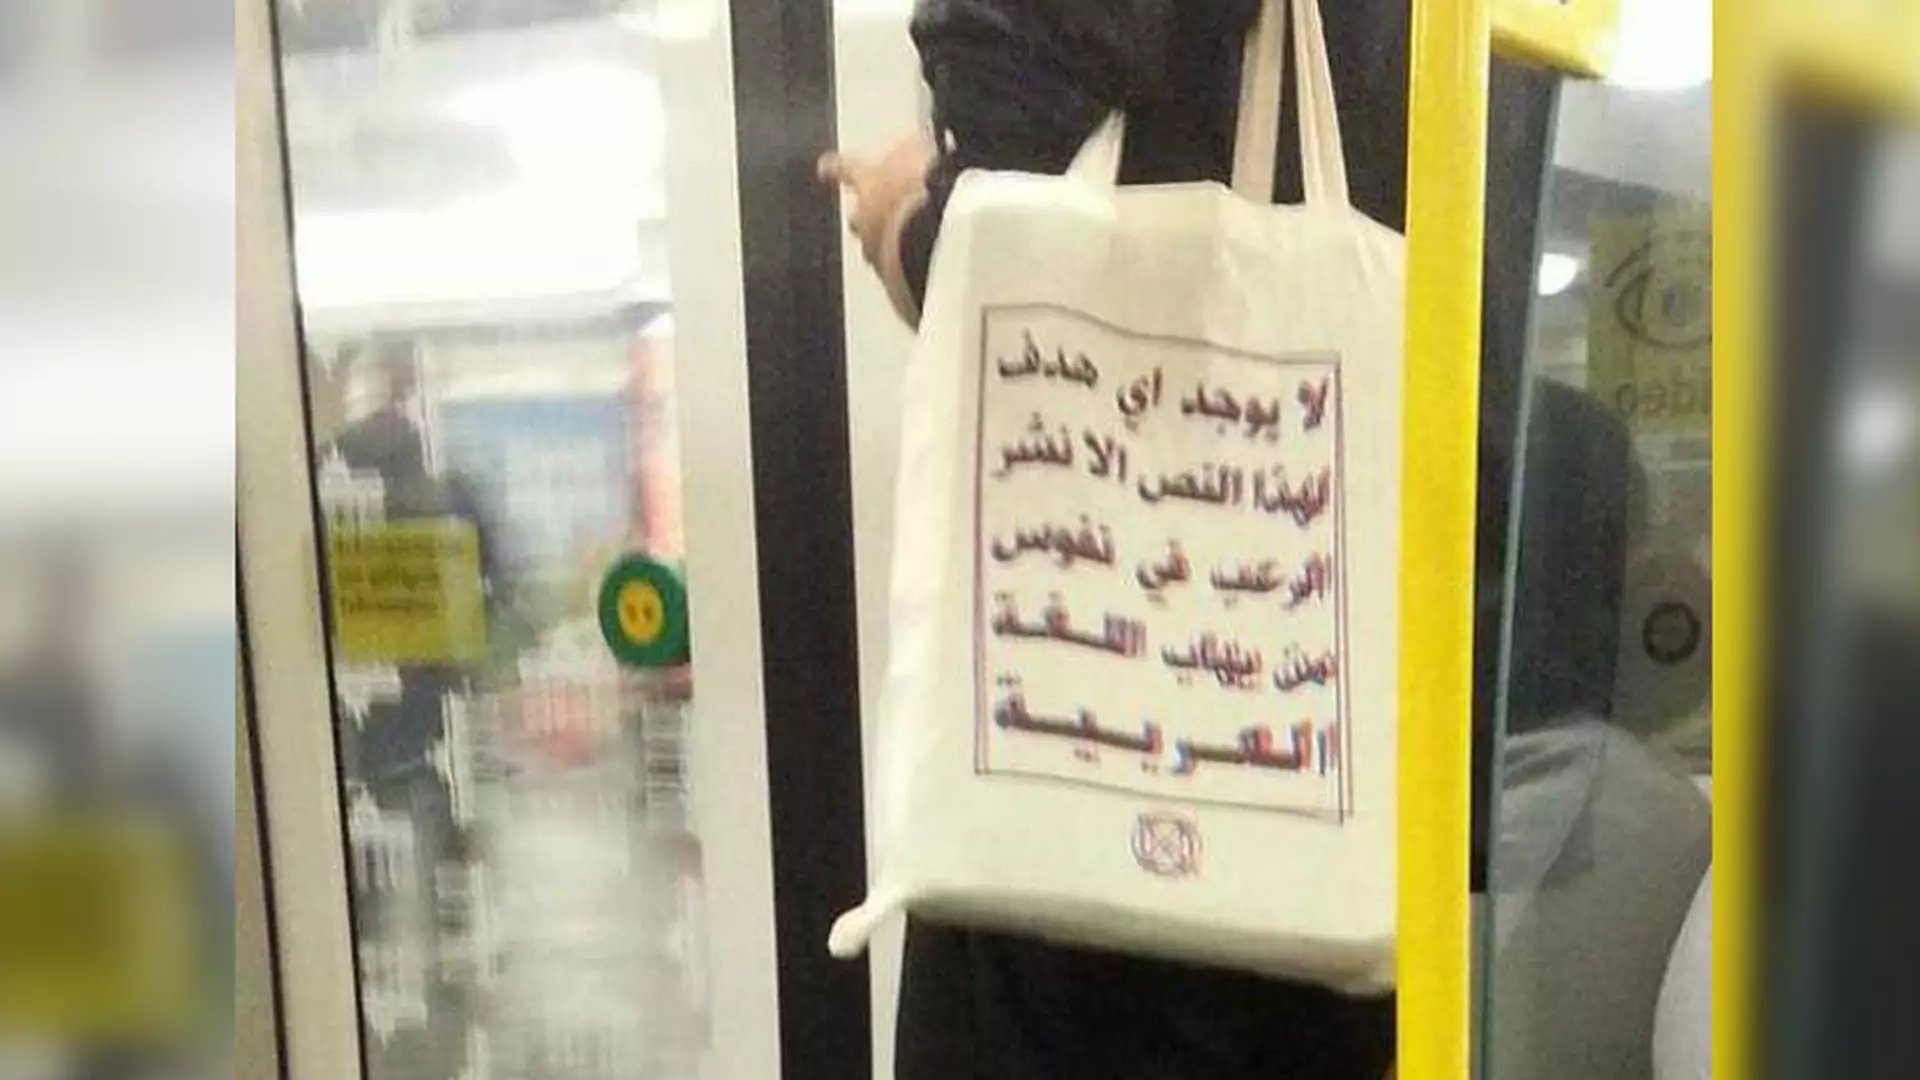 Przestraszylibyście się osoby z taką torbą w autobusie? Zdziwicie się, kiedy poznacie tłumaczenie tekstu